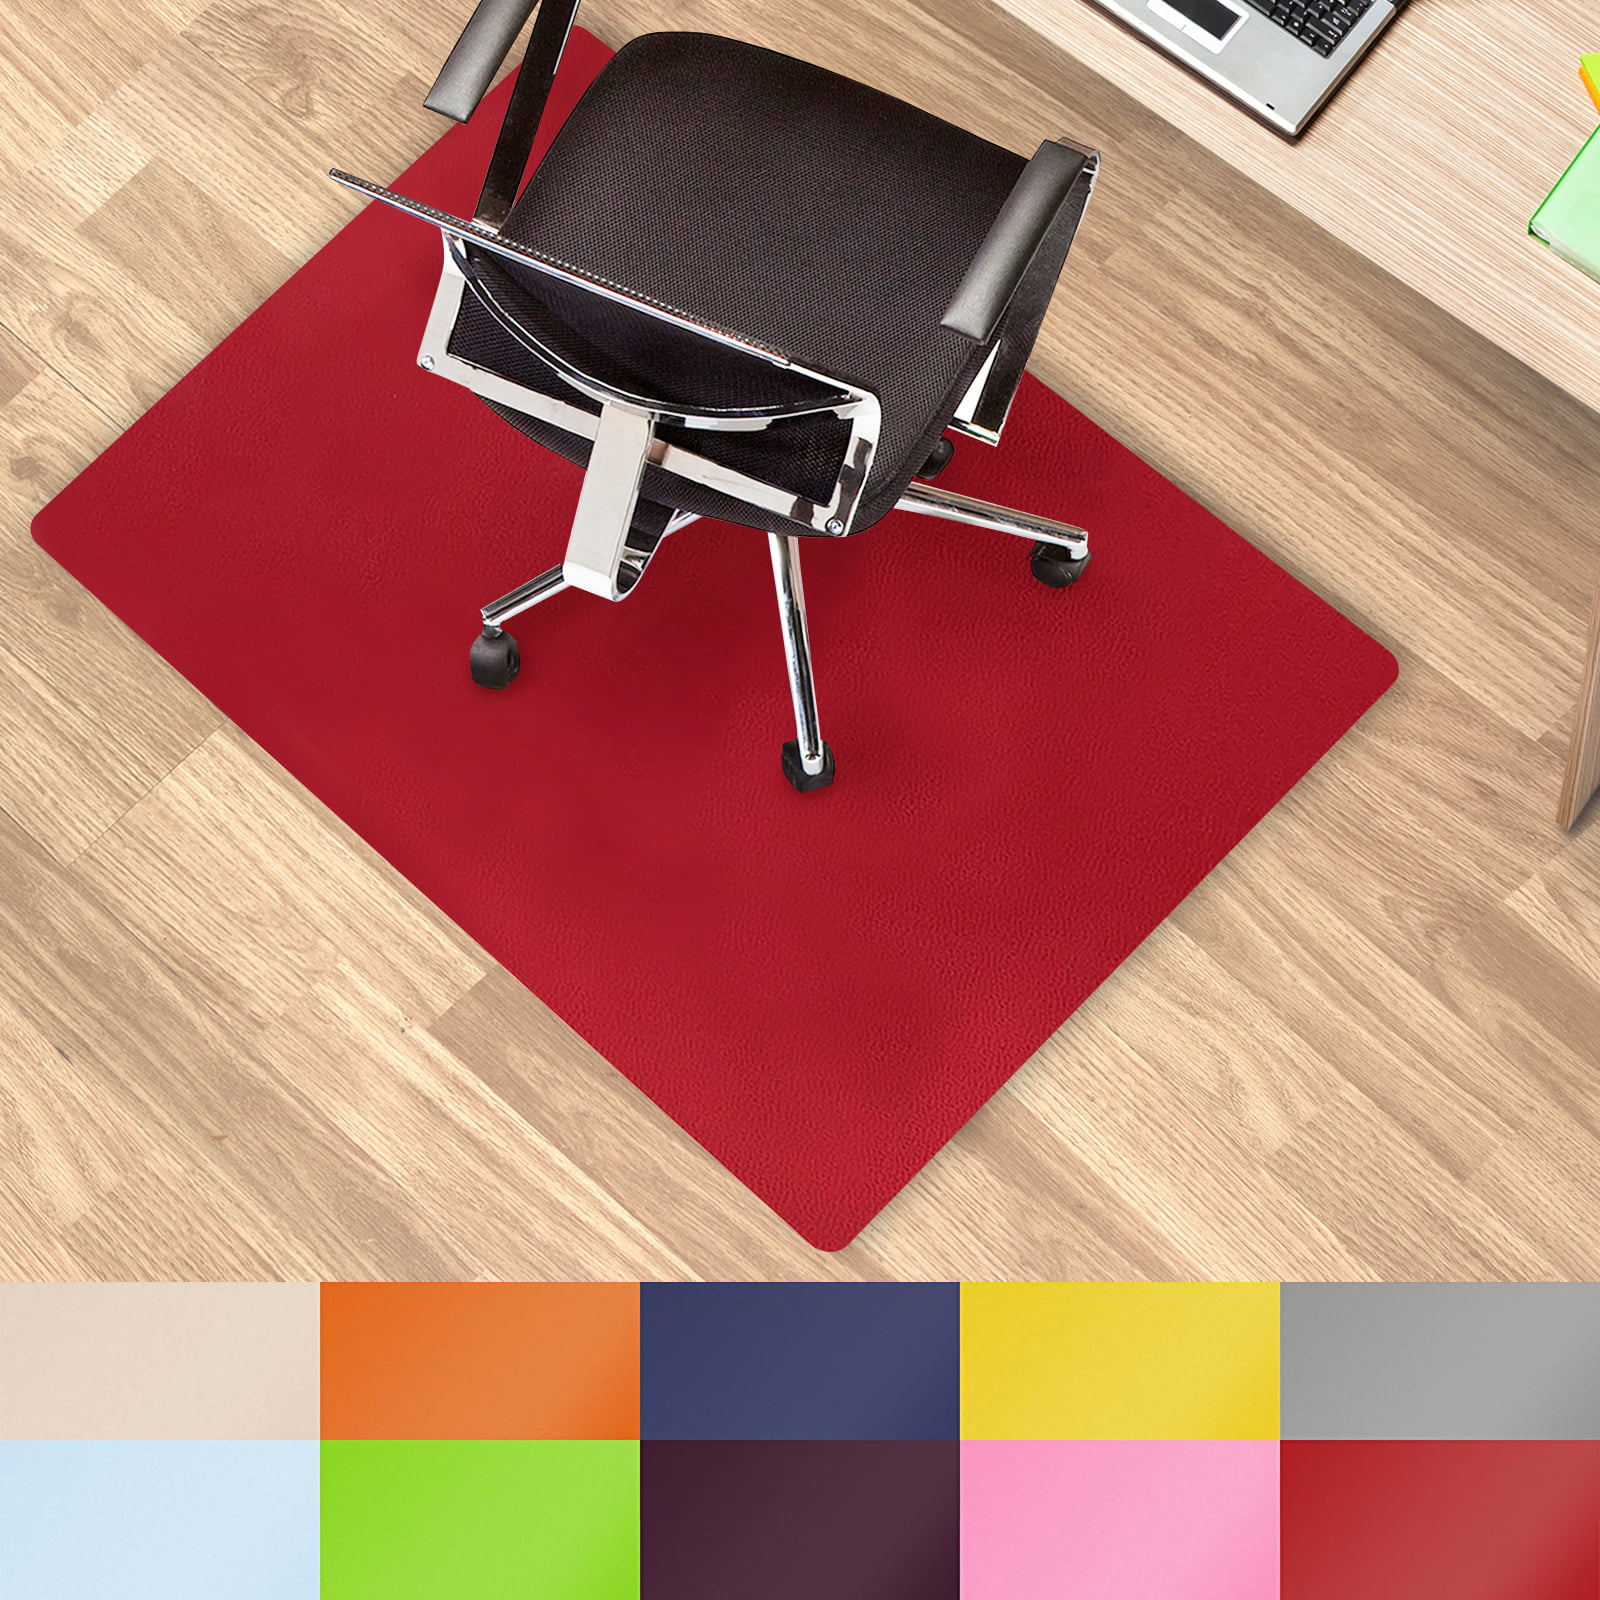 Chair Mat For Hard Floors, Desk Floor Mat For Hardwood